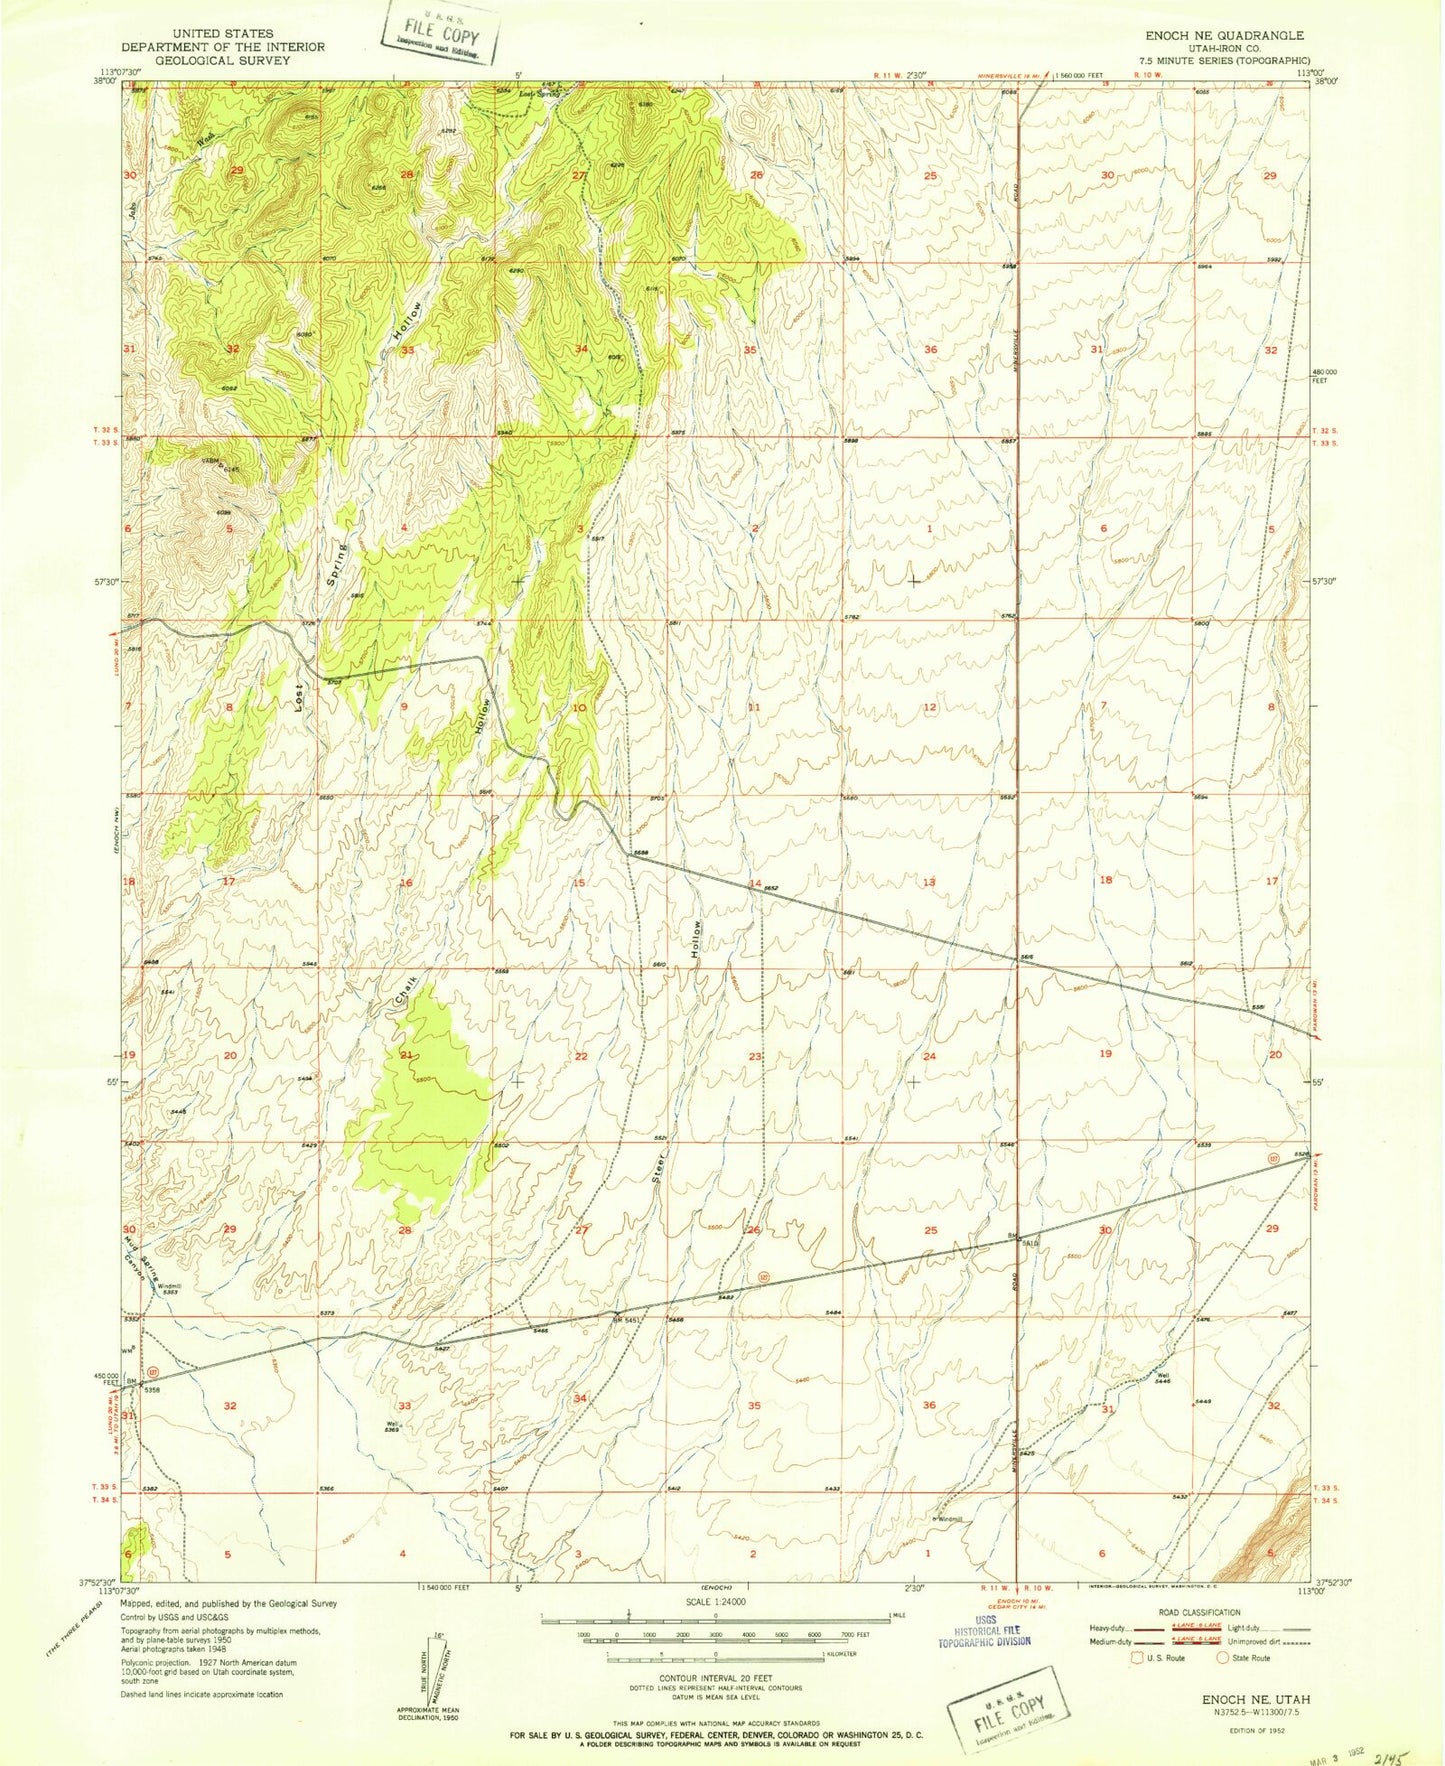 Classic USGS Enoch NE Utah 7.5'x7.5' Topo Map Image